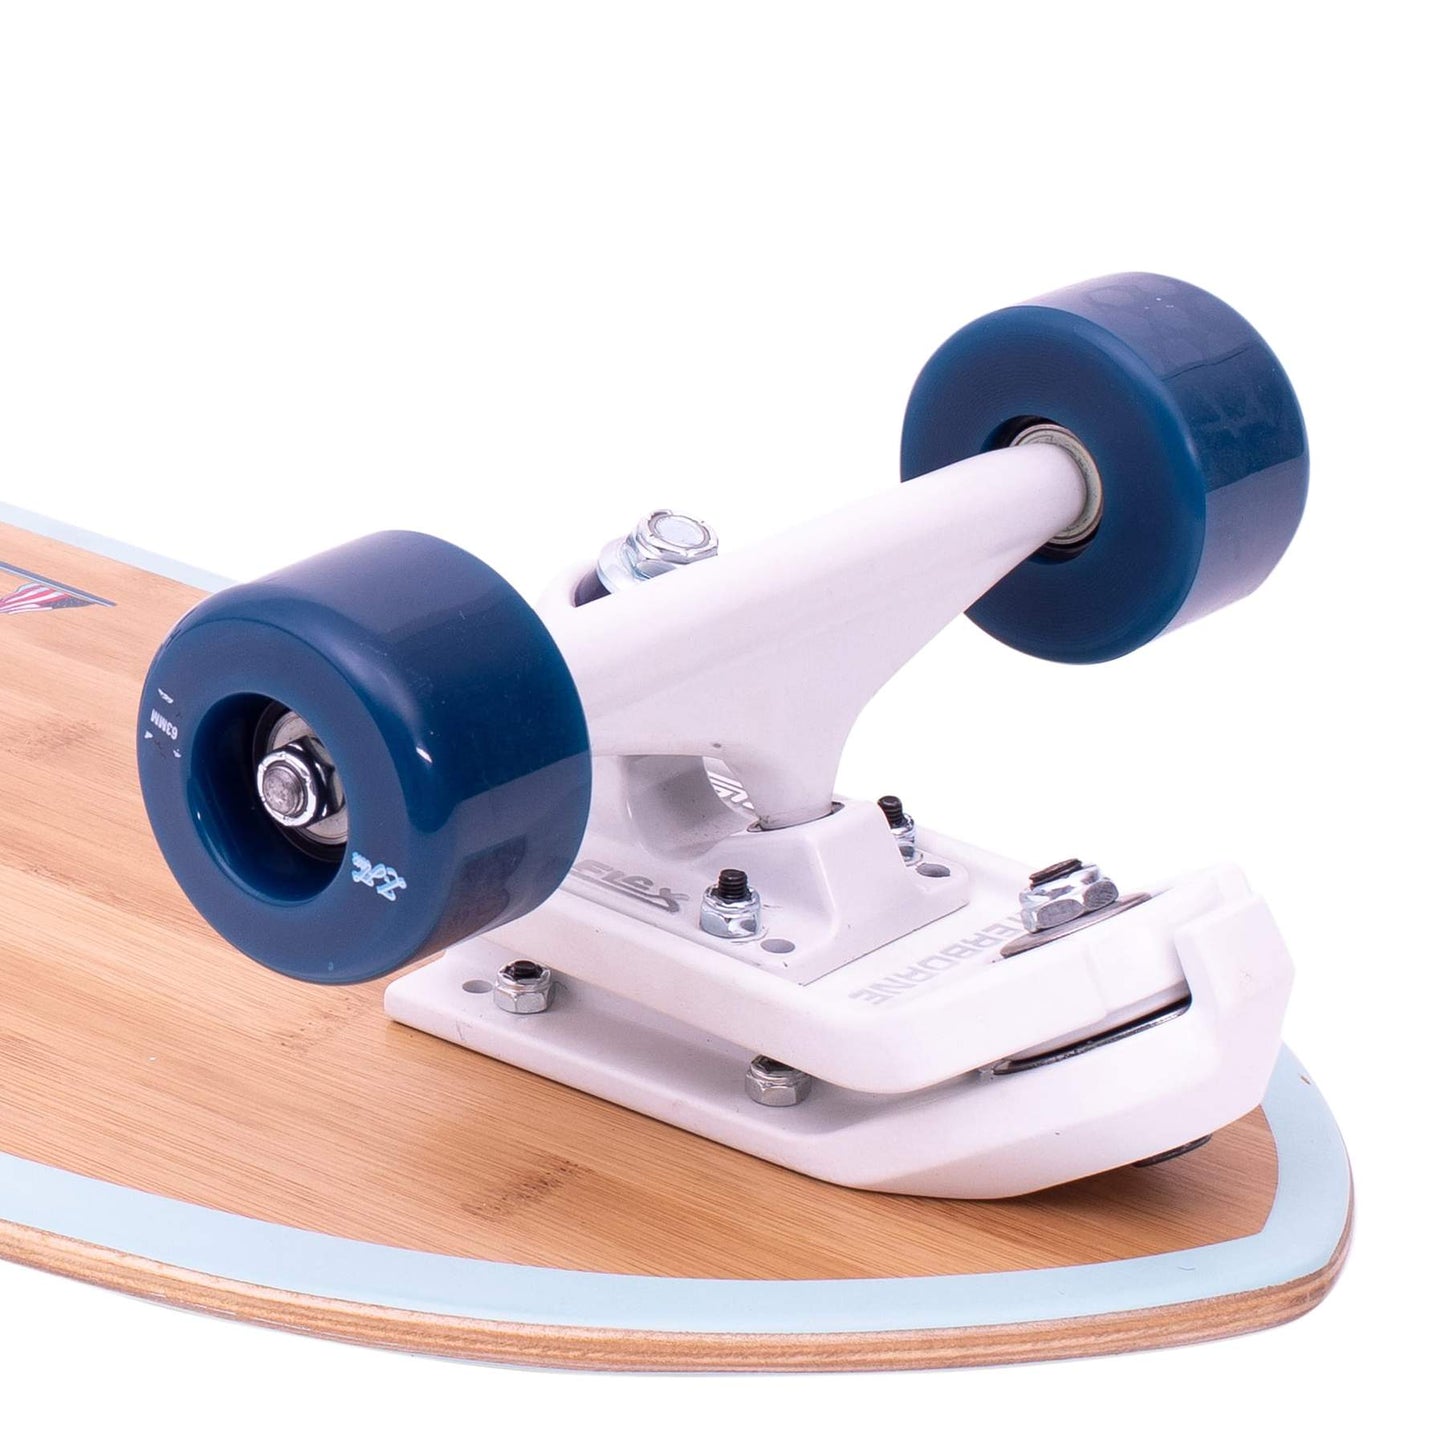 Z-FLEX スケートボード 31インチ Bambooコンプリートサーフスケートフィッシュ ブルー-Z-FLEX SKATEBOARDS JAPAN OFFICIAL【公式通販】